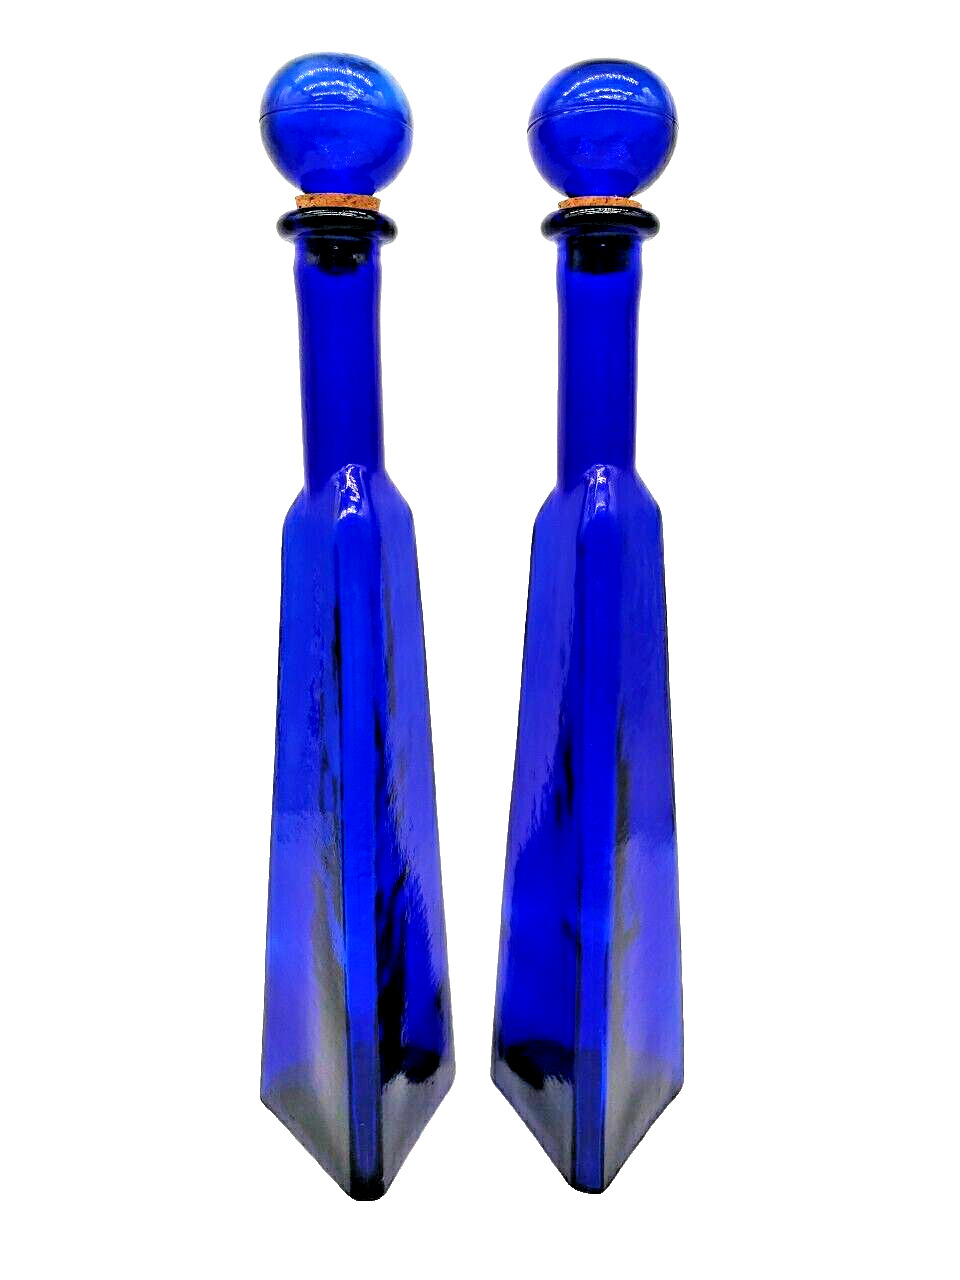 Vintage Triangle Cobalt Blue Wine Bottle & Cork Stopper Himark Enterprises Inc.